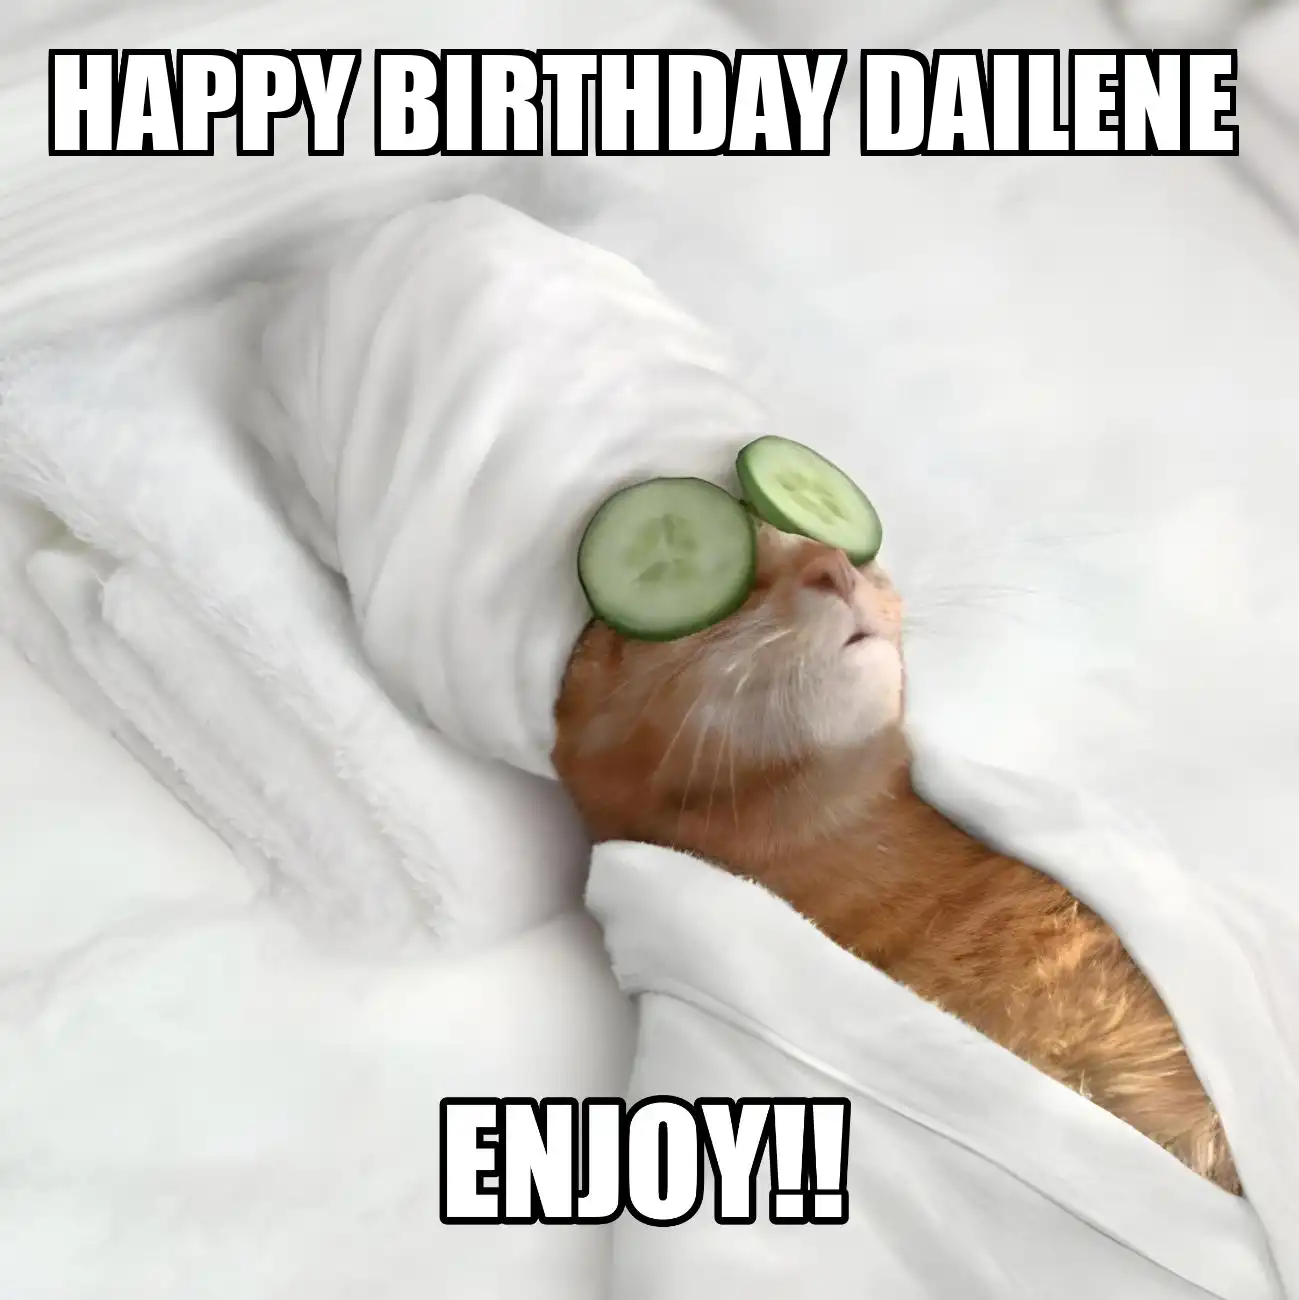 Happy Birthday Dailene Enjoy Cat Meme